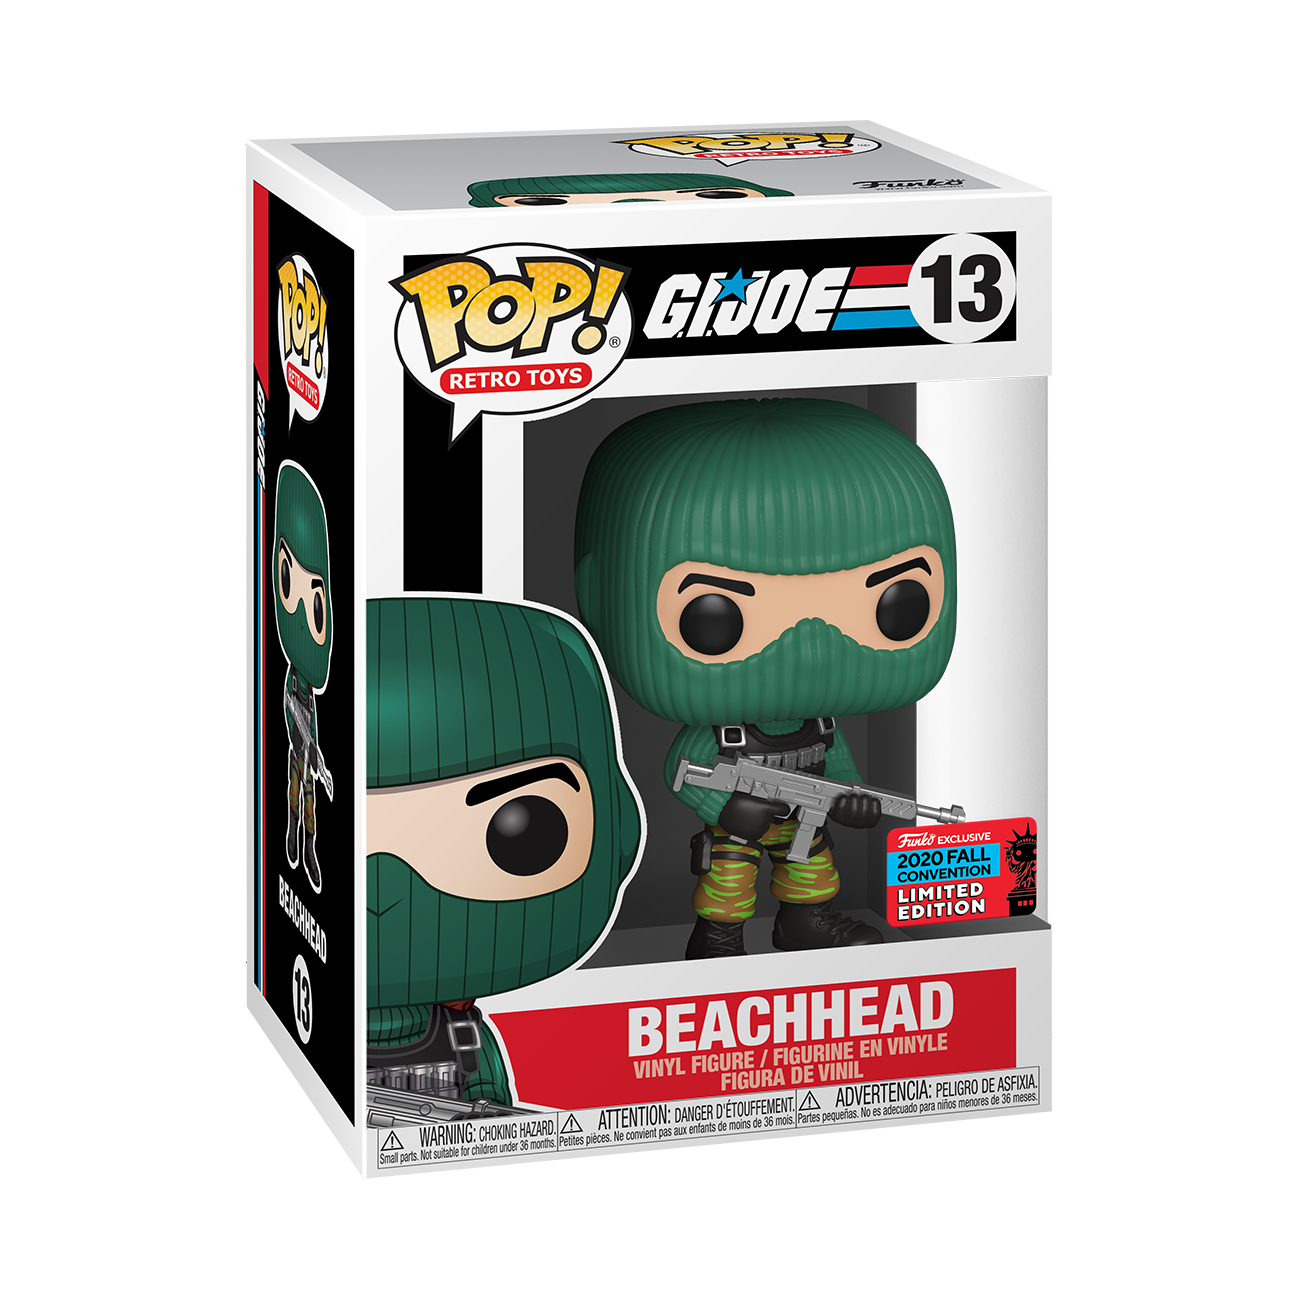 G.I. Joe - Beach Head Pop! Vinyl NYCC 2020 BOXED